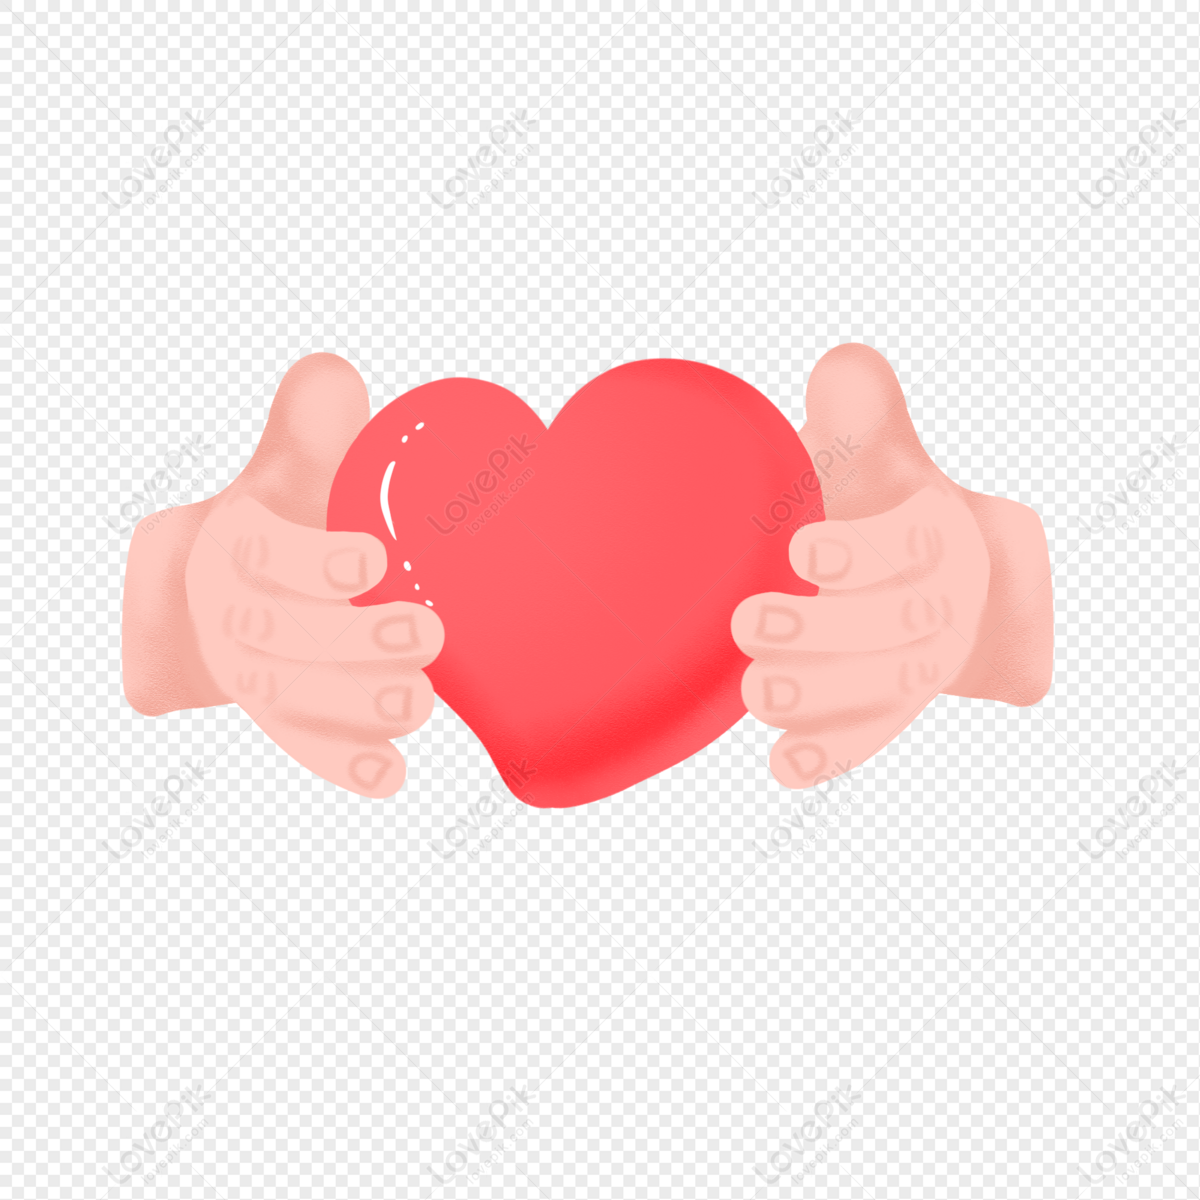 Tay Cầm Trái Tim - Hãy khám phá hình ảnh với tay cầm trái tim đầy tình cảm. Hiện lên trên màn hình là một tay cầm trái tim tuyệt đẹp, nó là biểu tượng của tình yêu và sự chân thành. Hãy cảm nhận được tình cảm sâu thẳm tràn đầy trong bức ảnh này.